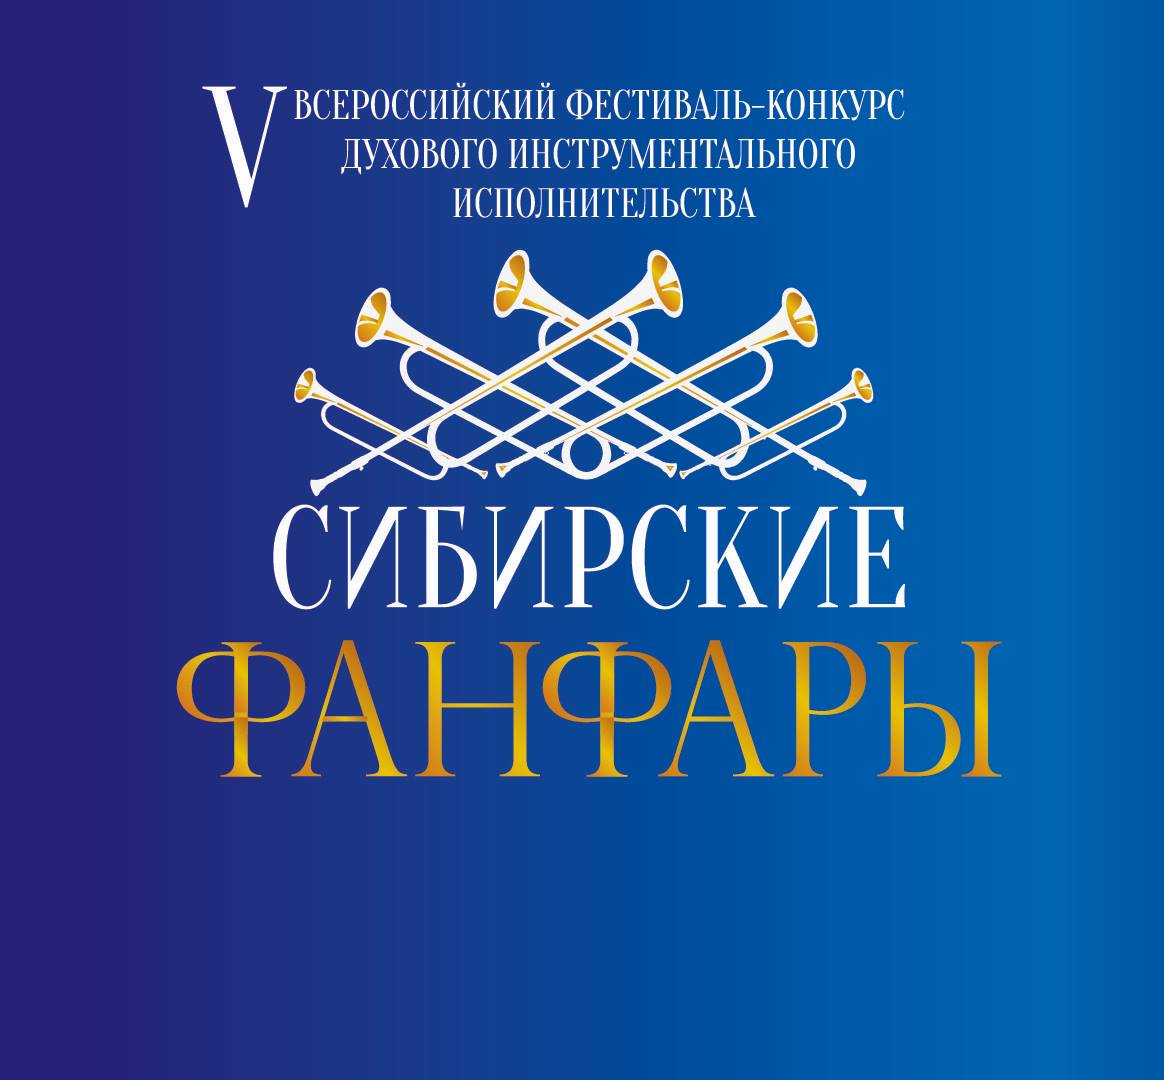 V Всероссийский фестиваль-конкурс духового инструментального исполнительства 